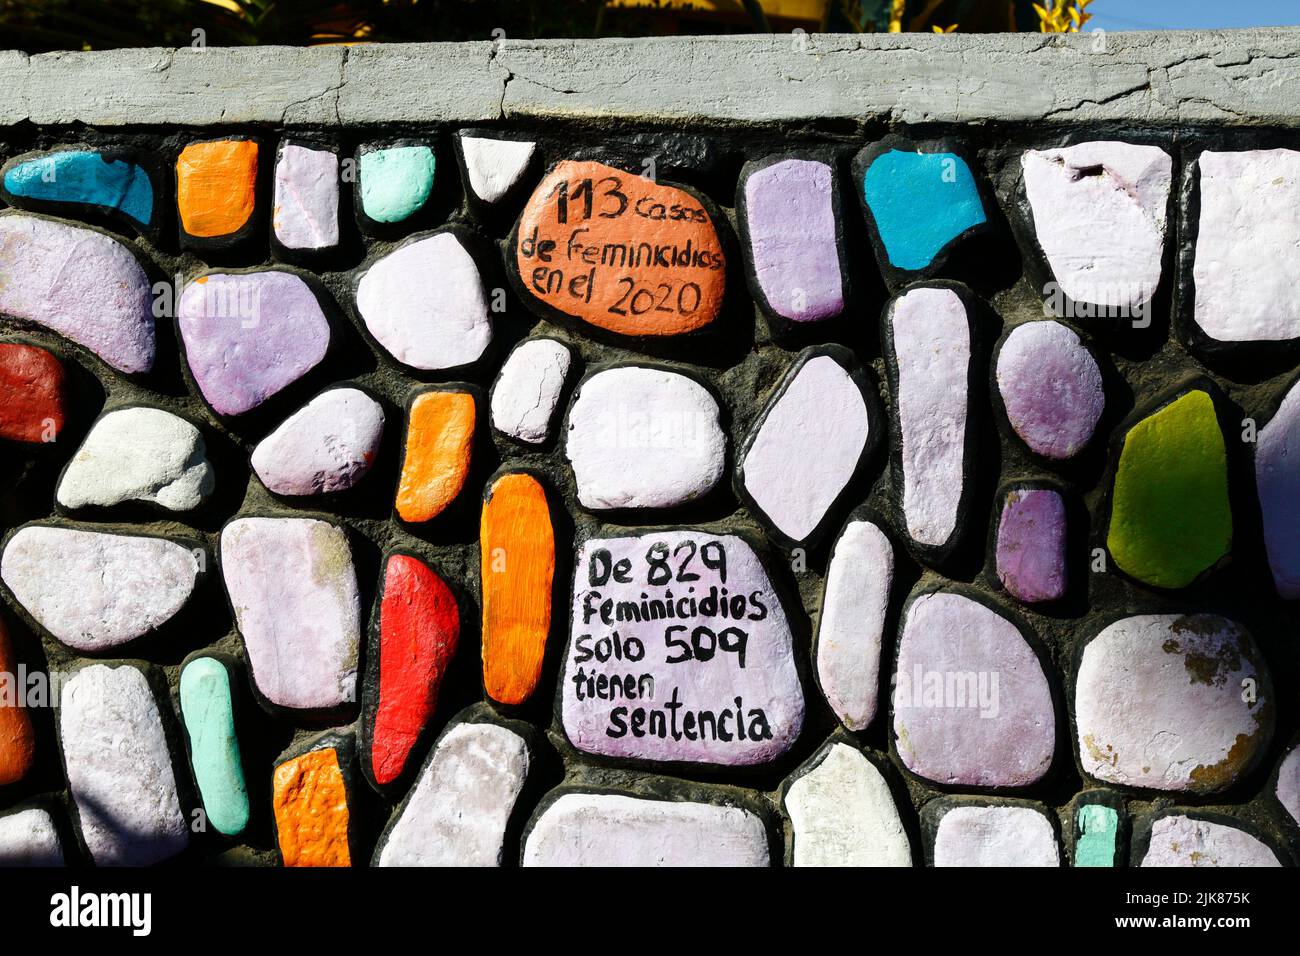 29.. Juni 2022, Calacoto, La Paz, Bolivien. Detail von Graffiti-Wandmalereien feministischer Gruppen an einer Wand im Bezirk Zona Sur von La Paz, die gegen Gewalt gegen Frauen, die Anzahl der Feminizide und die Langsamkeit des Justizsystems im Umgang mit Fällen protestieren. Stockfoto